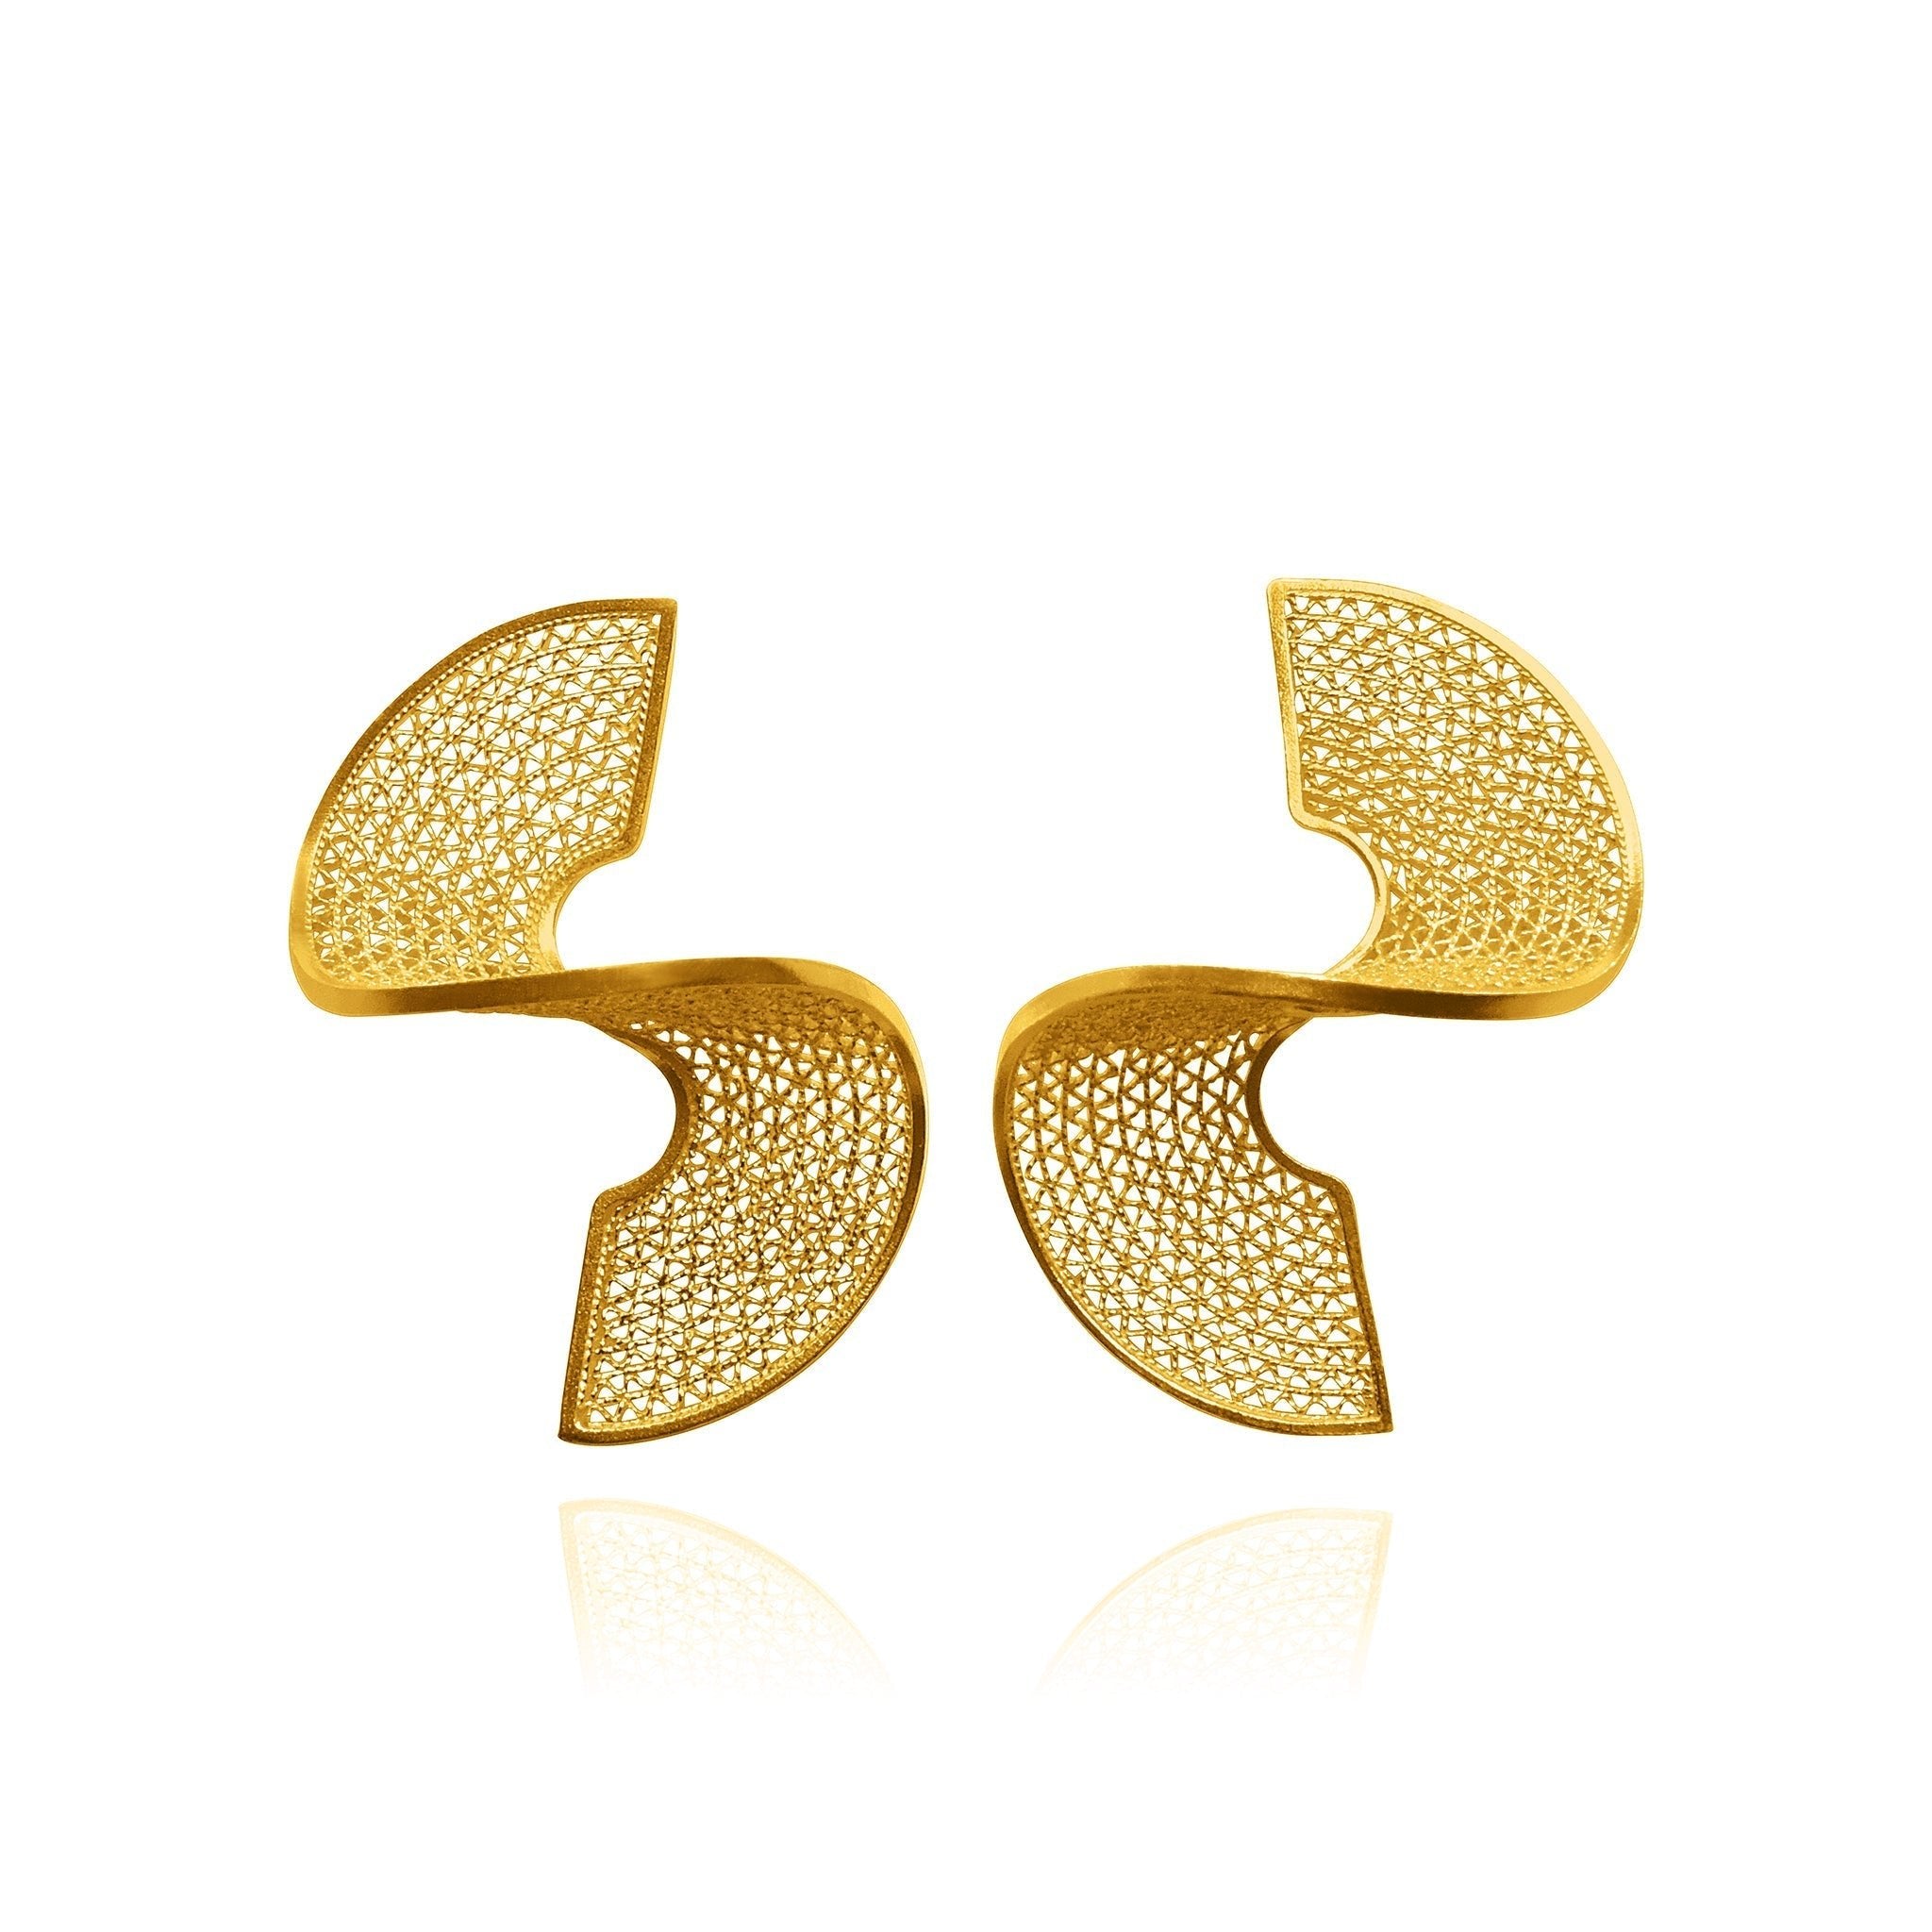 Courtney 18k Gold Vermeil Plated Filigree Earrings - Earrings